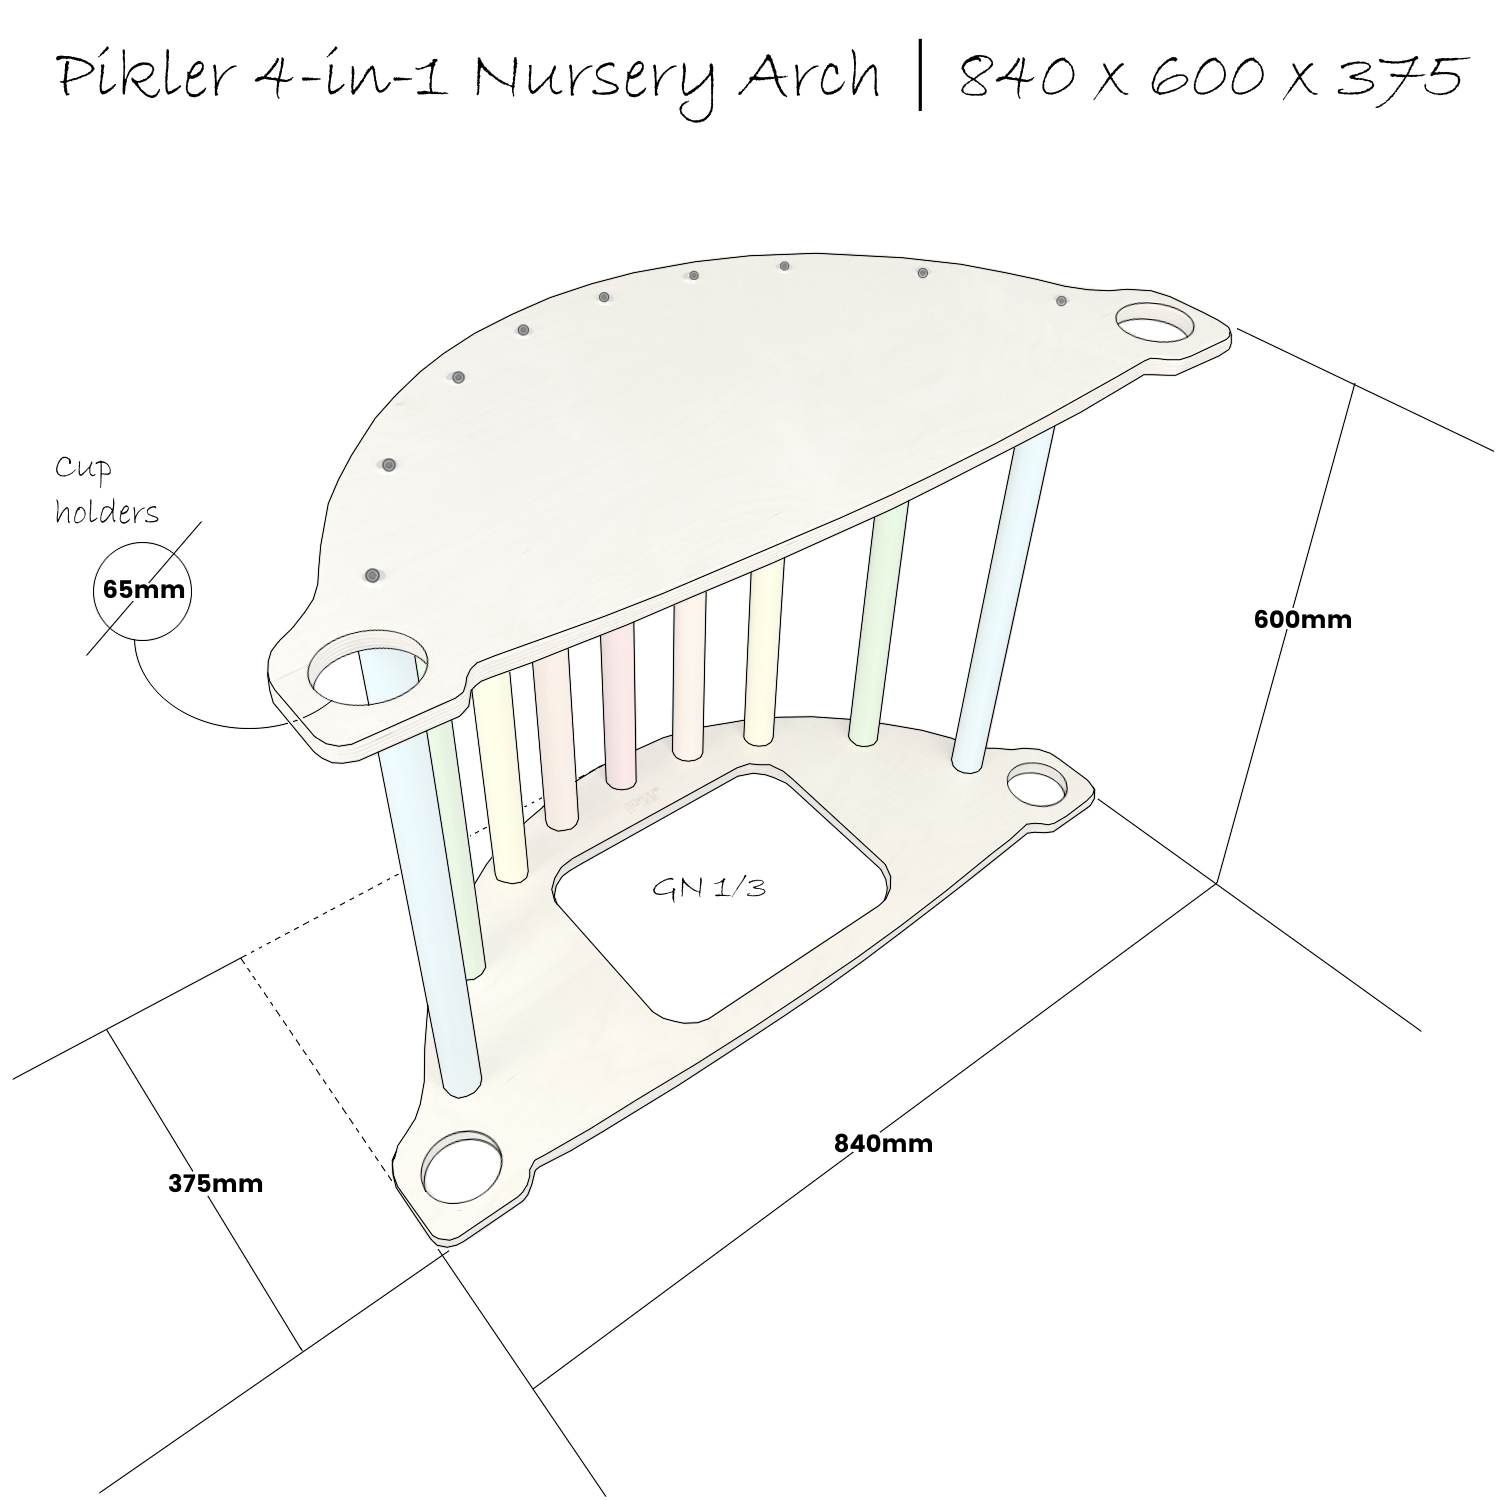 Nursery Pikler 4 in 1 Arch Schematic 840x600x375